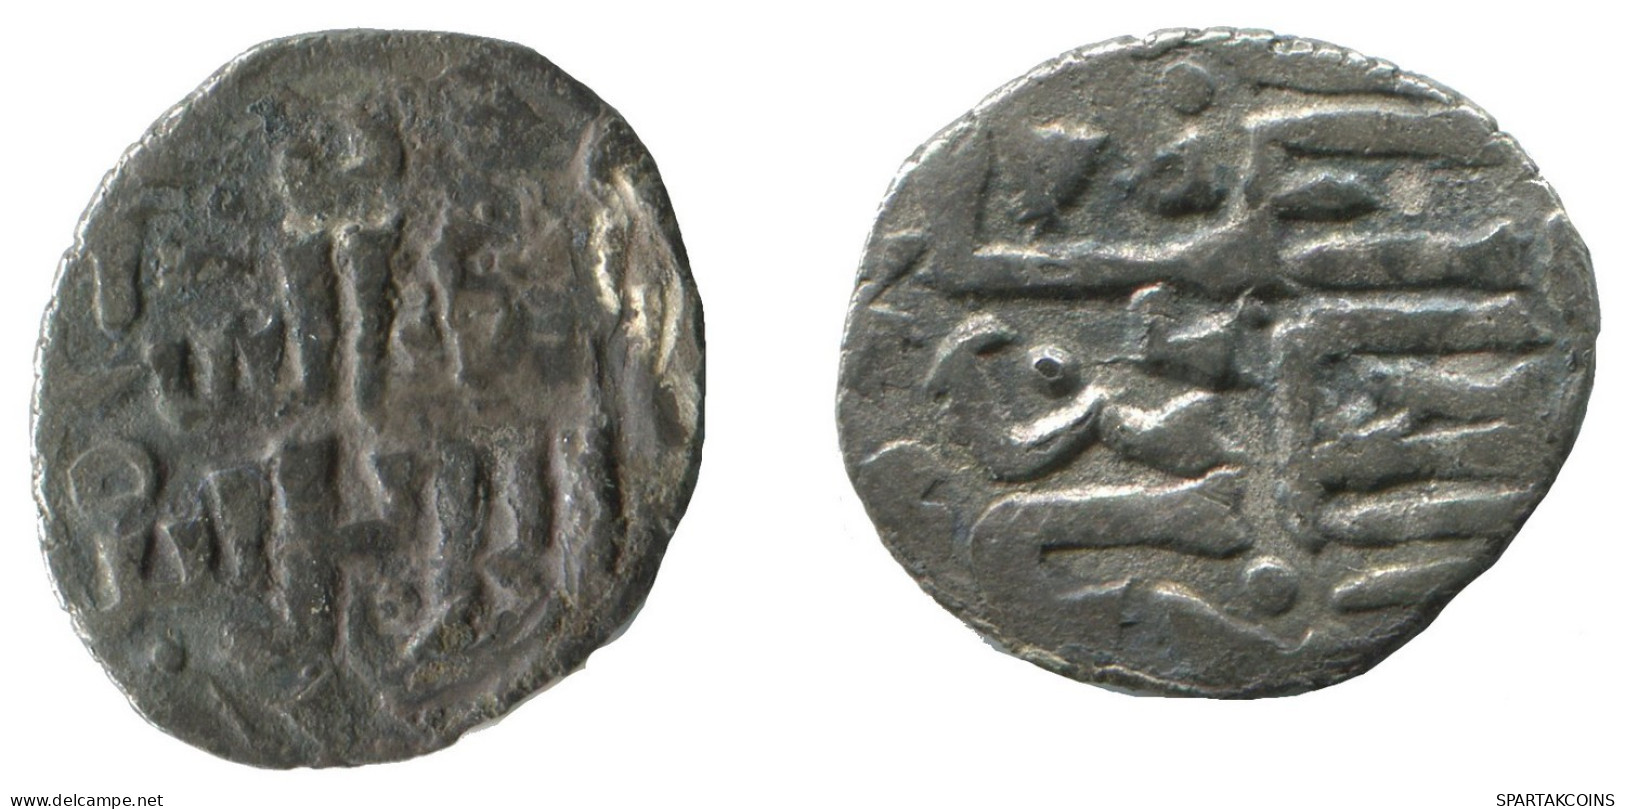 GOLDEN HORDE Silver Dirham Medieval Islamic Coin 1.6g/17mm #NNN2012.8.E.A - Islamische Münzen